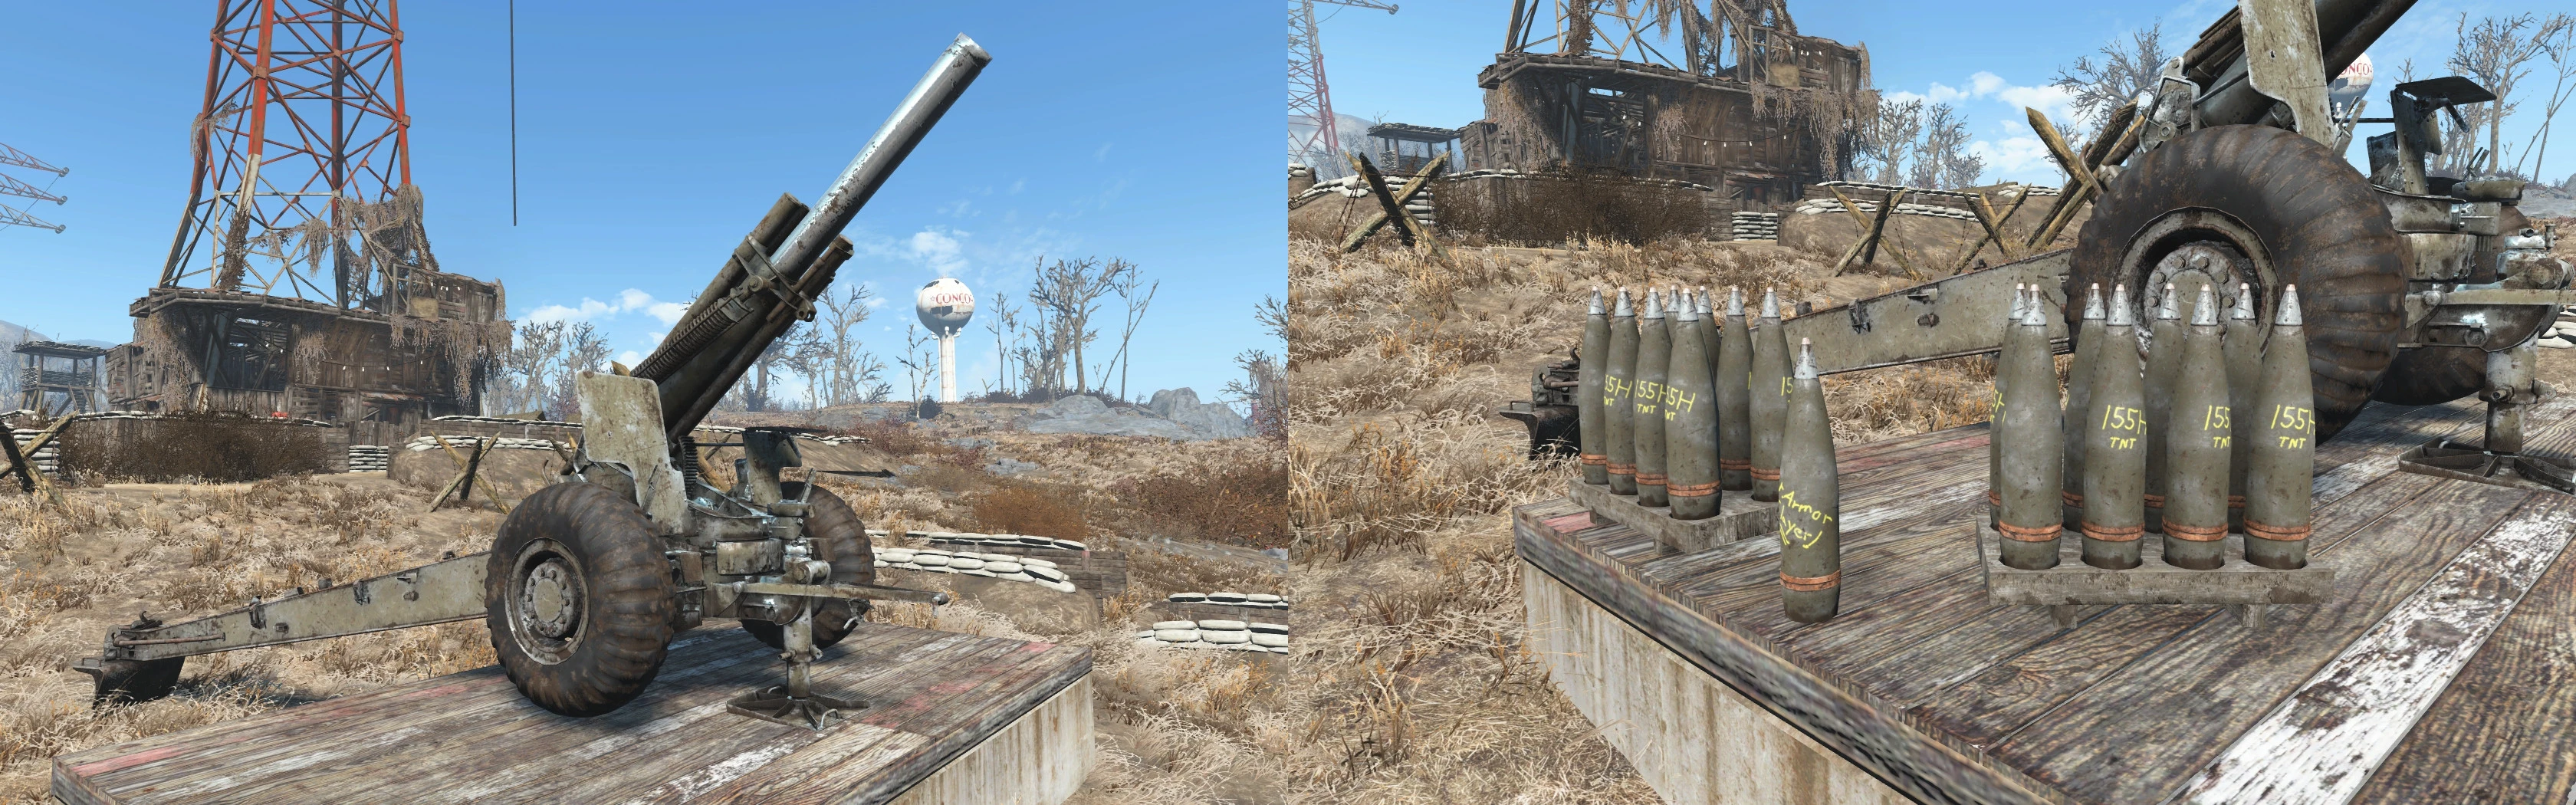 Fallout 4 ракетная турель фото 46